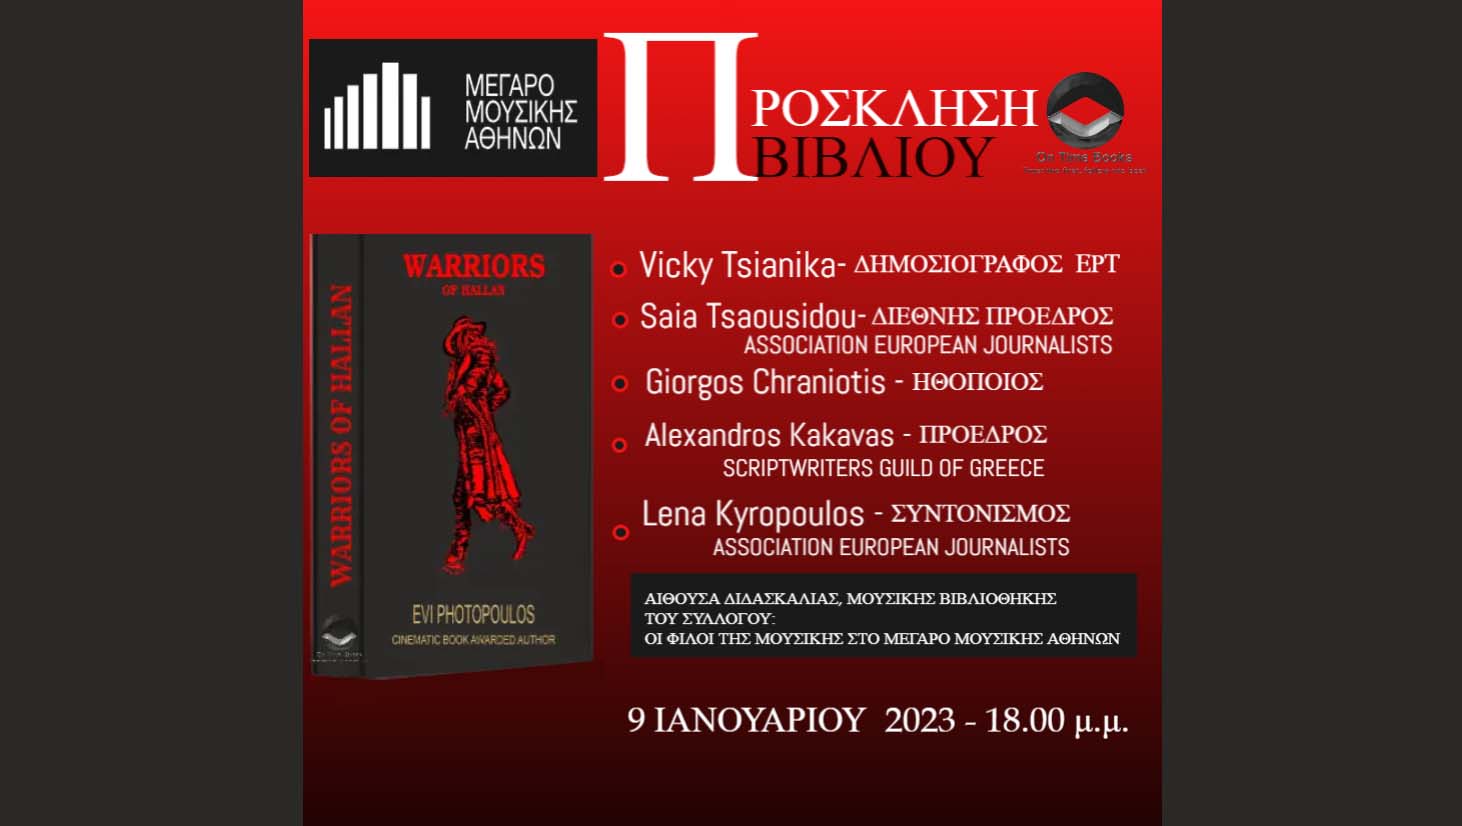 Πρόσκληση παρουσίασης του βιβλίου Warriors of Hallan της πολυβραβευμένης Evi Photopoulos